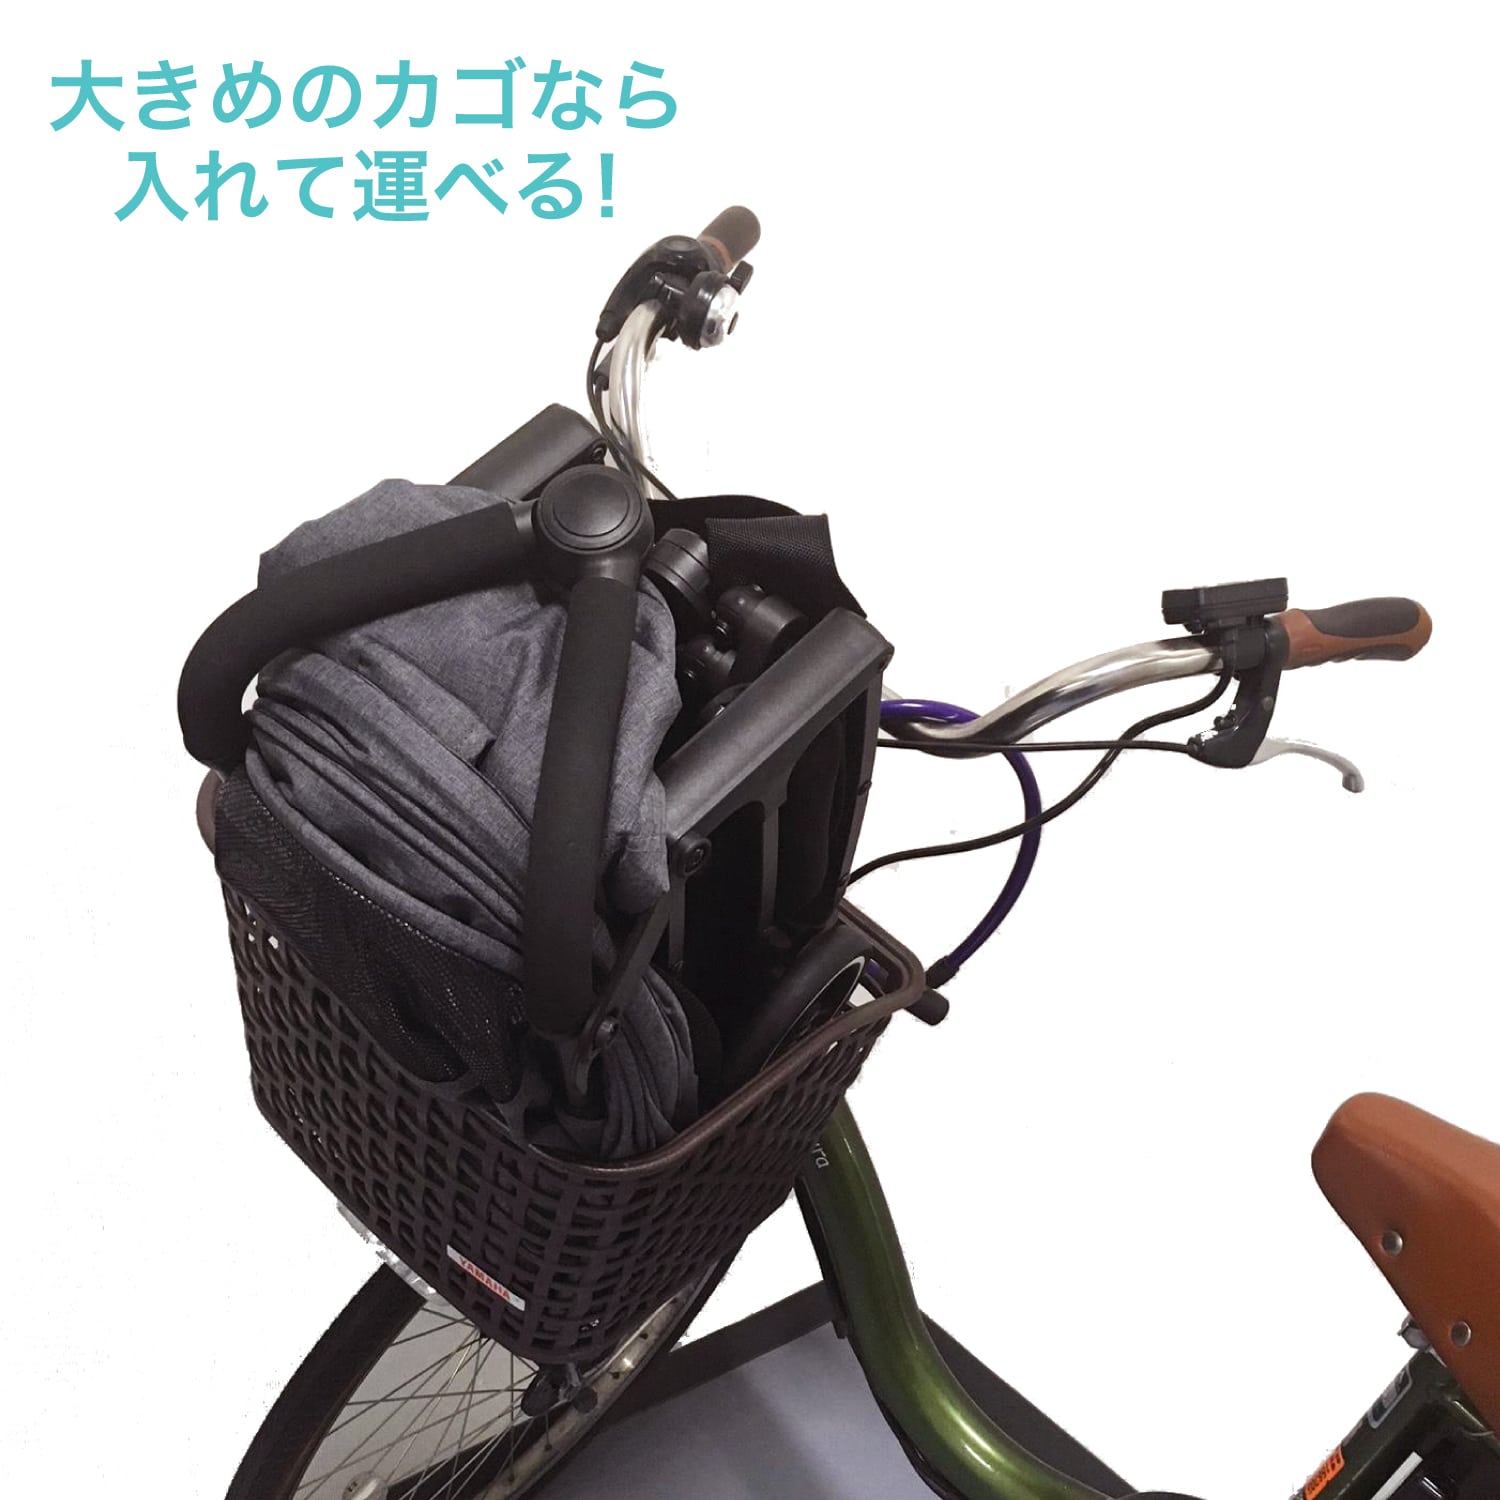 大きめのかごの自転車なら、入れて運ぶことができます。 トラベルバギー 日本育児 AB型ベビーカー